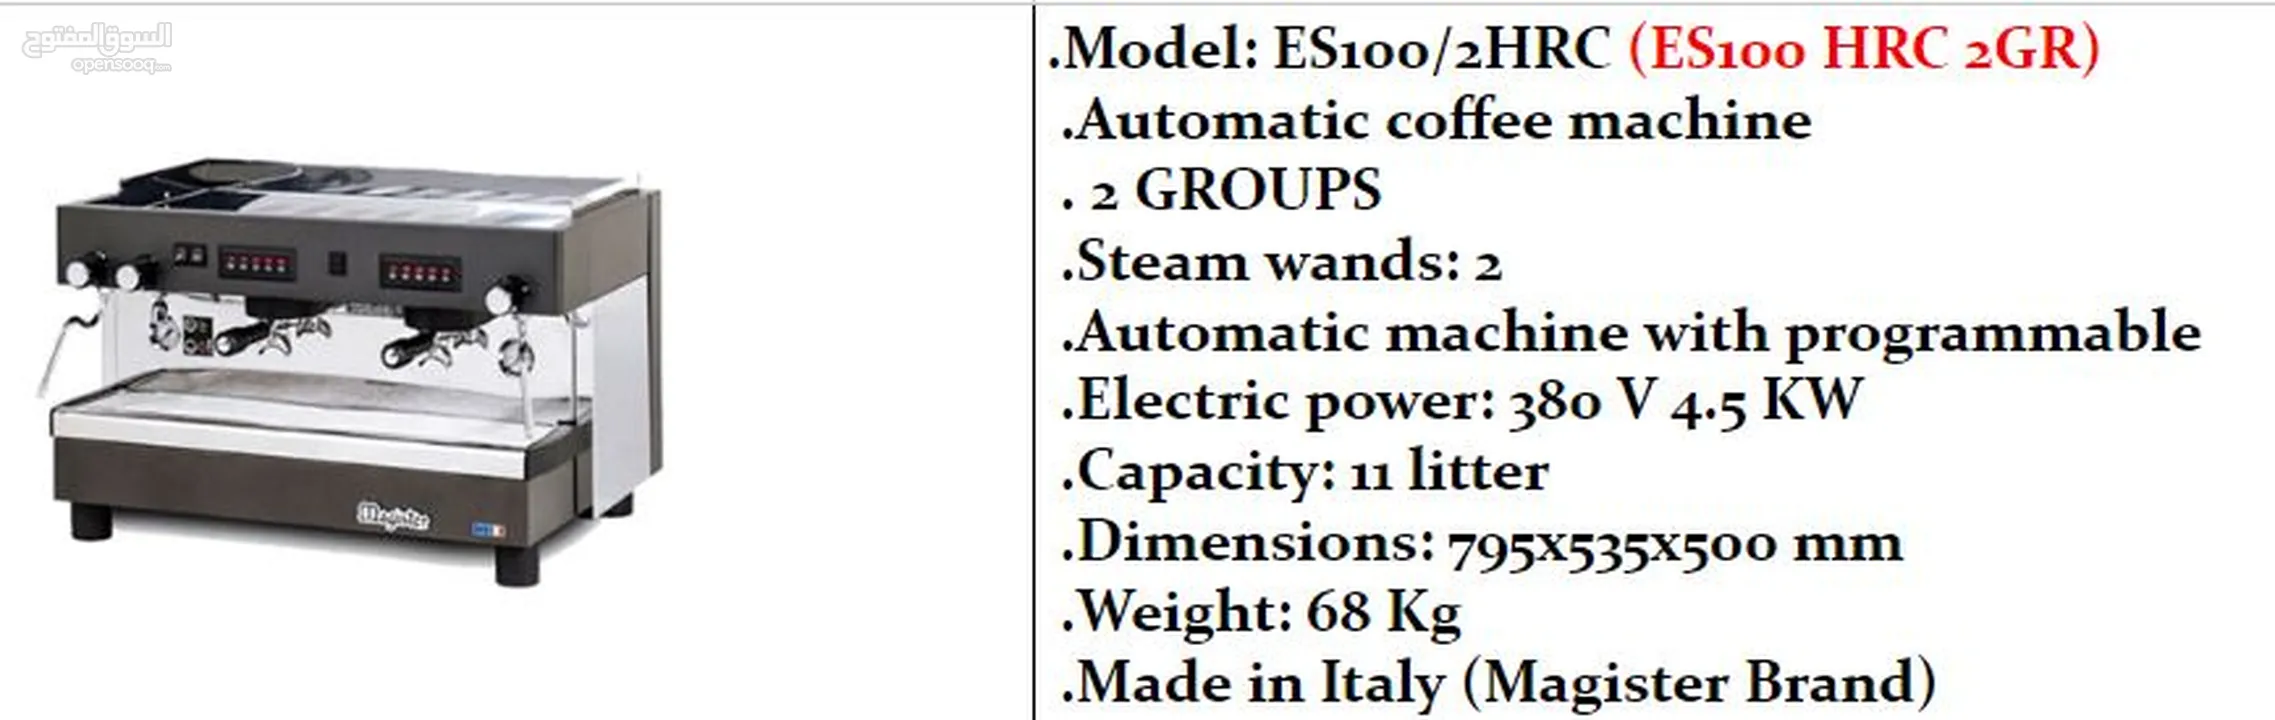 ماكينات قهوه  ماجيستر ايطالي 100%100 مقاسات مختلفه واشكال مختلفه